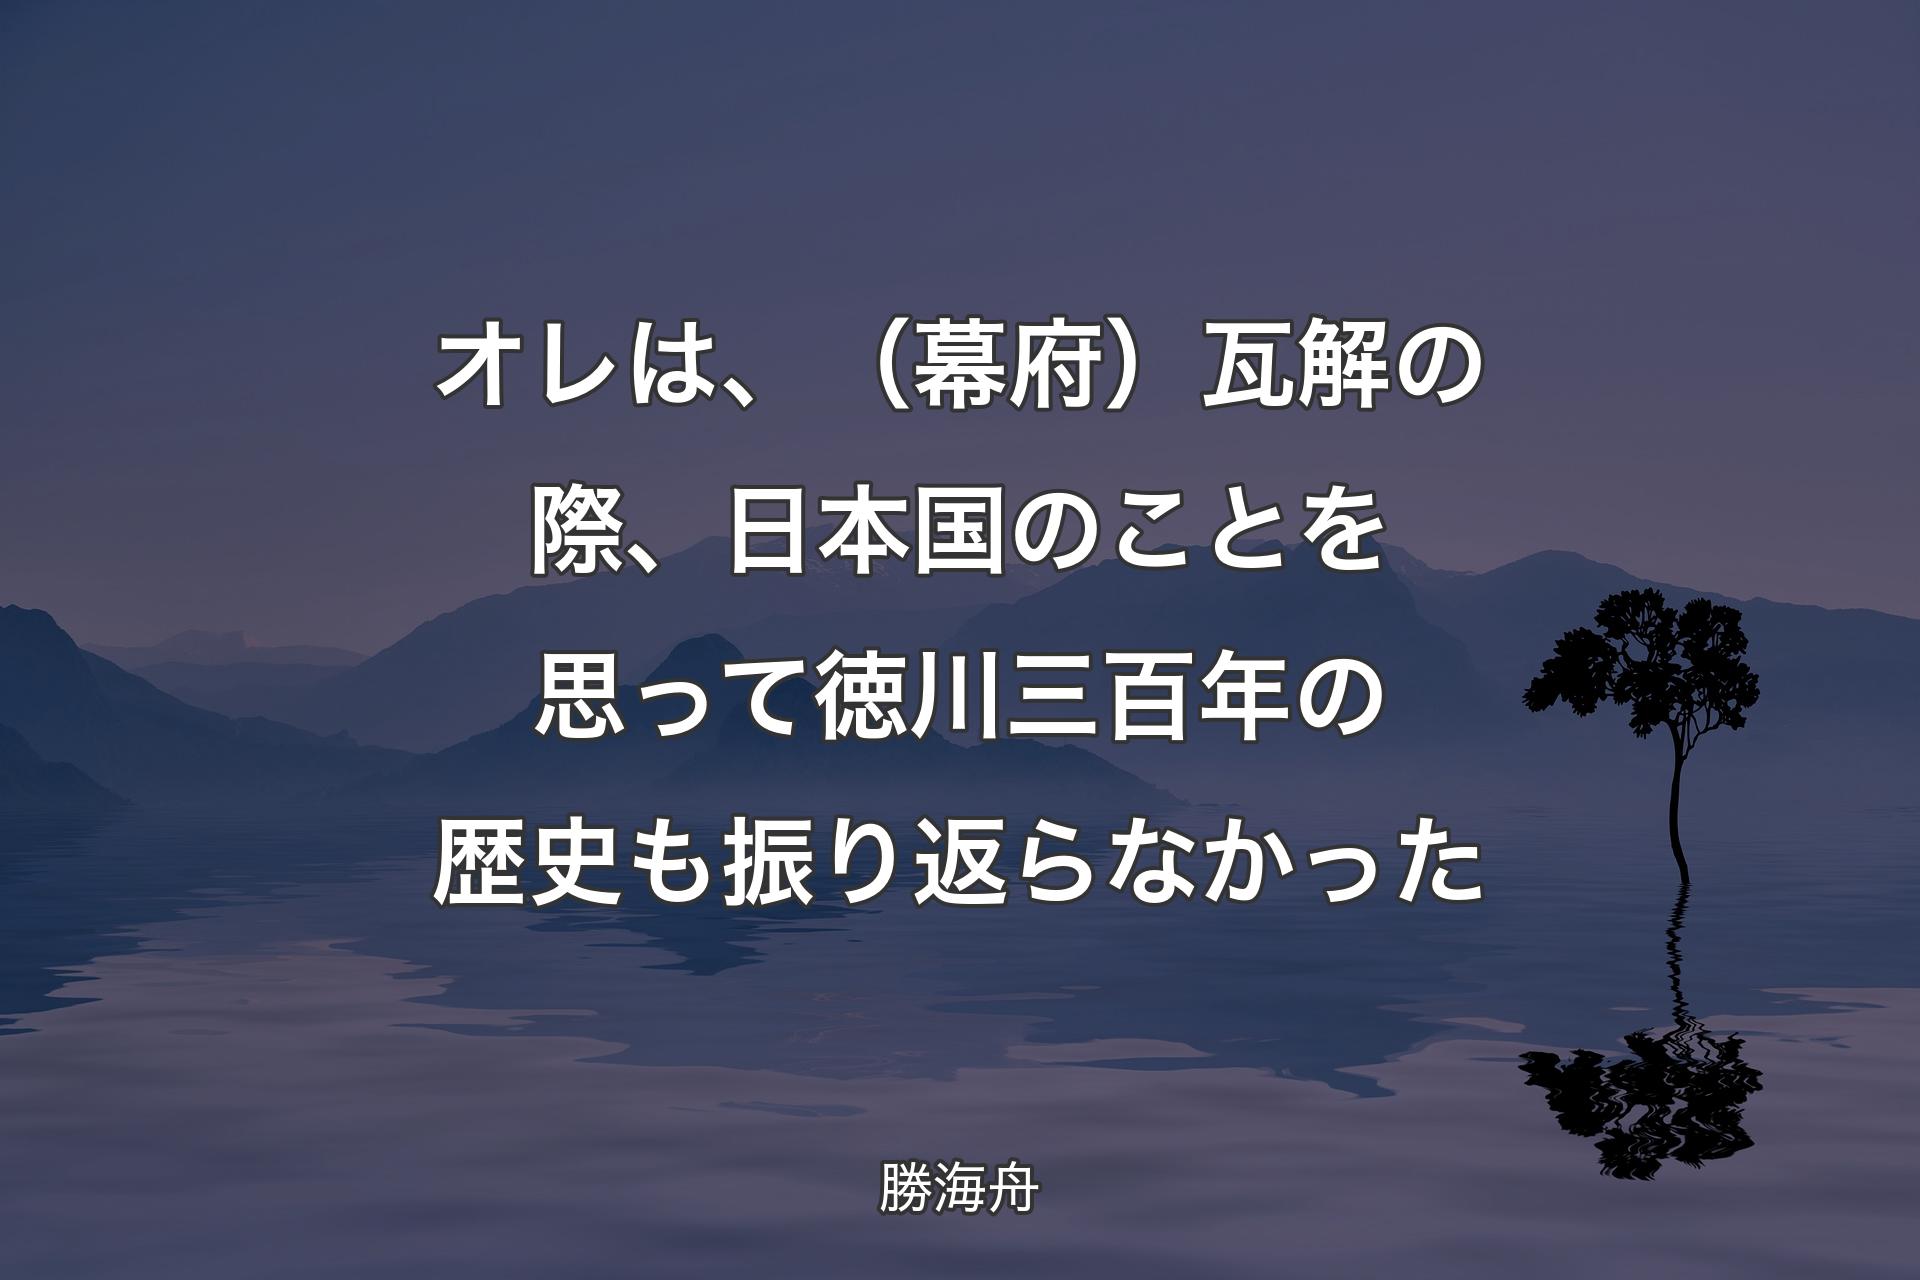 【背景4】オレは、（幕府）瓦解の際、日本国のことを思って徳川三百年の歴史も振り返らなかった - 勝海舟